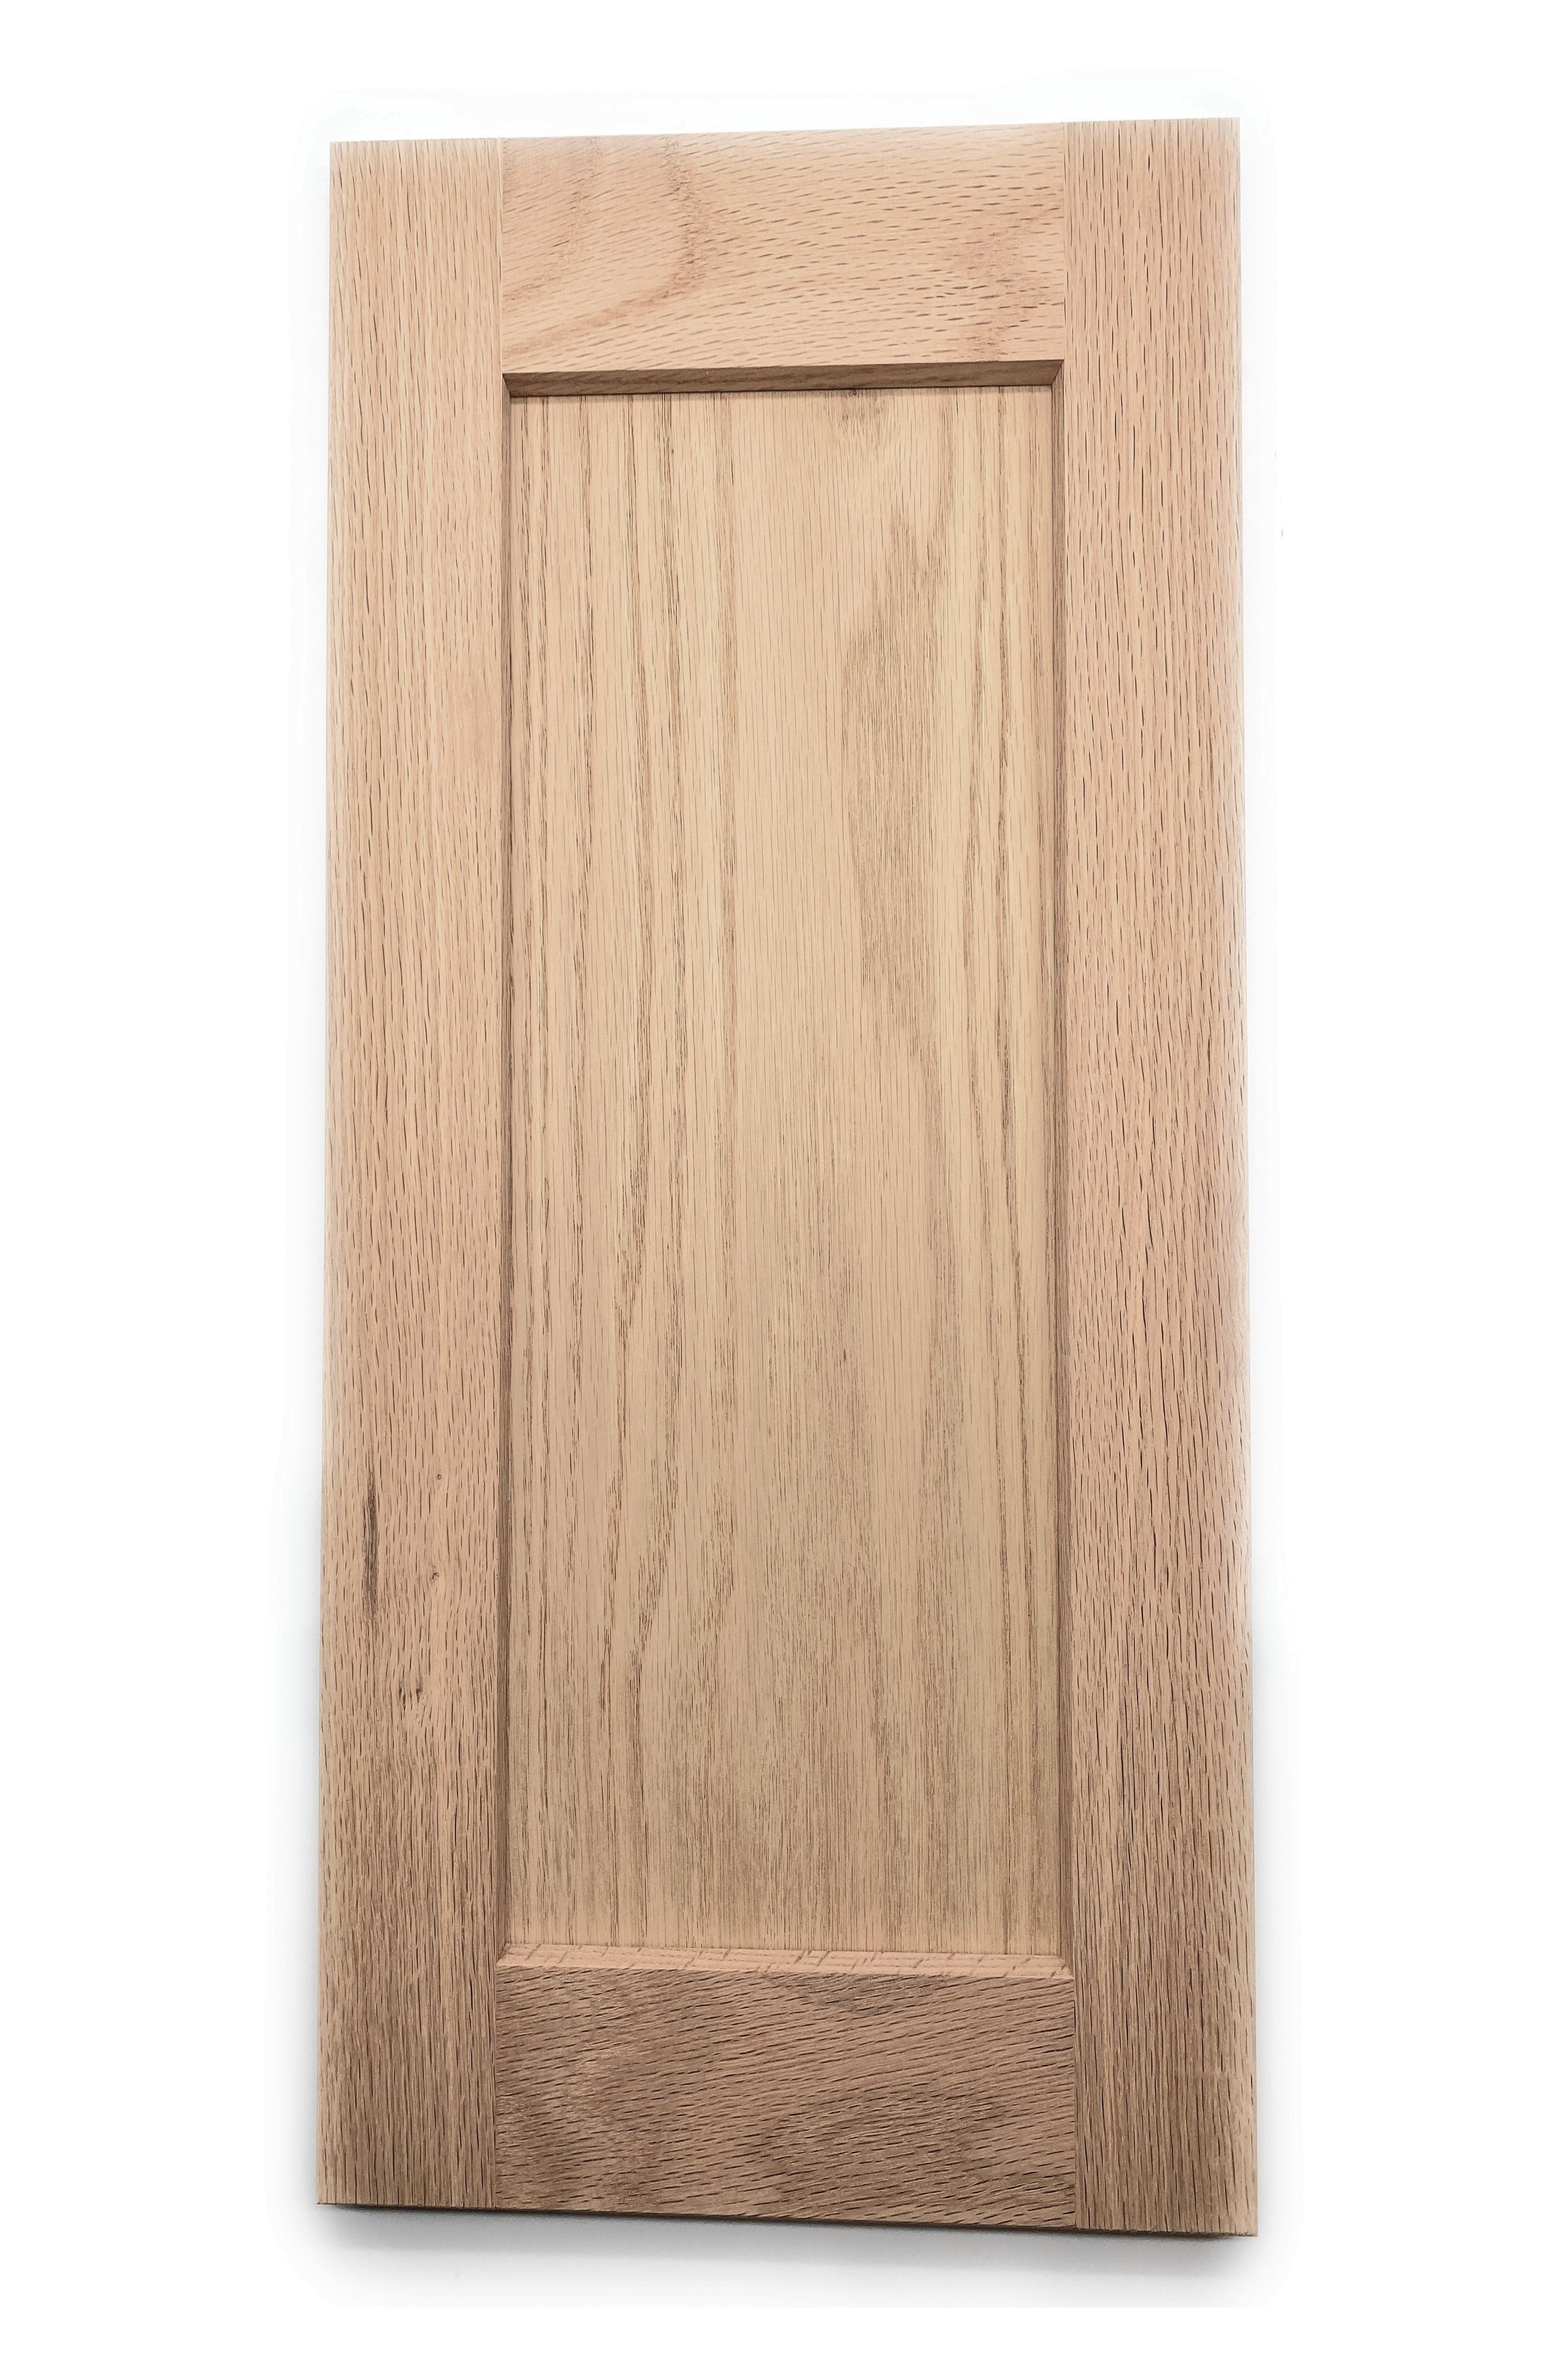 Onestock Unfinished Oak Wood Shaker Kitchen Cabinet Door Replacement 15 5 X 29 Com